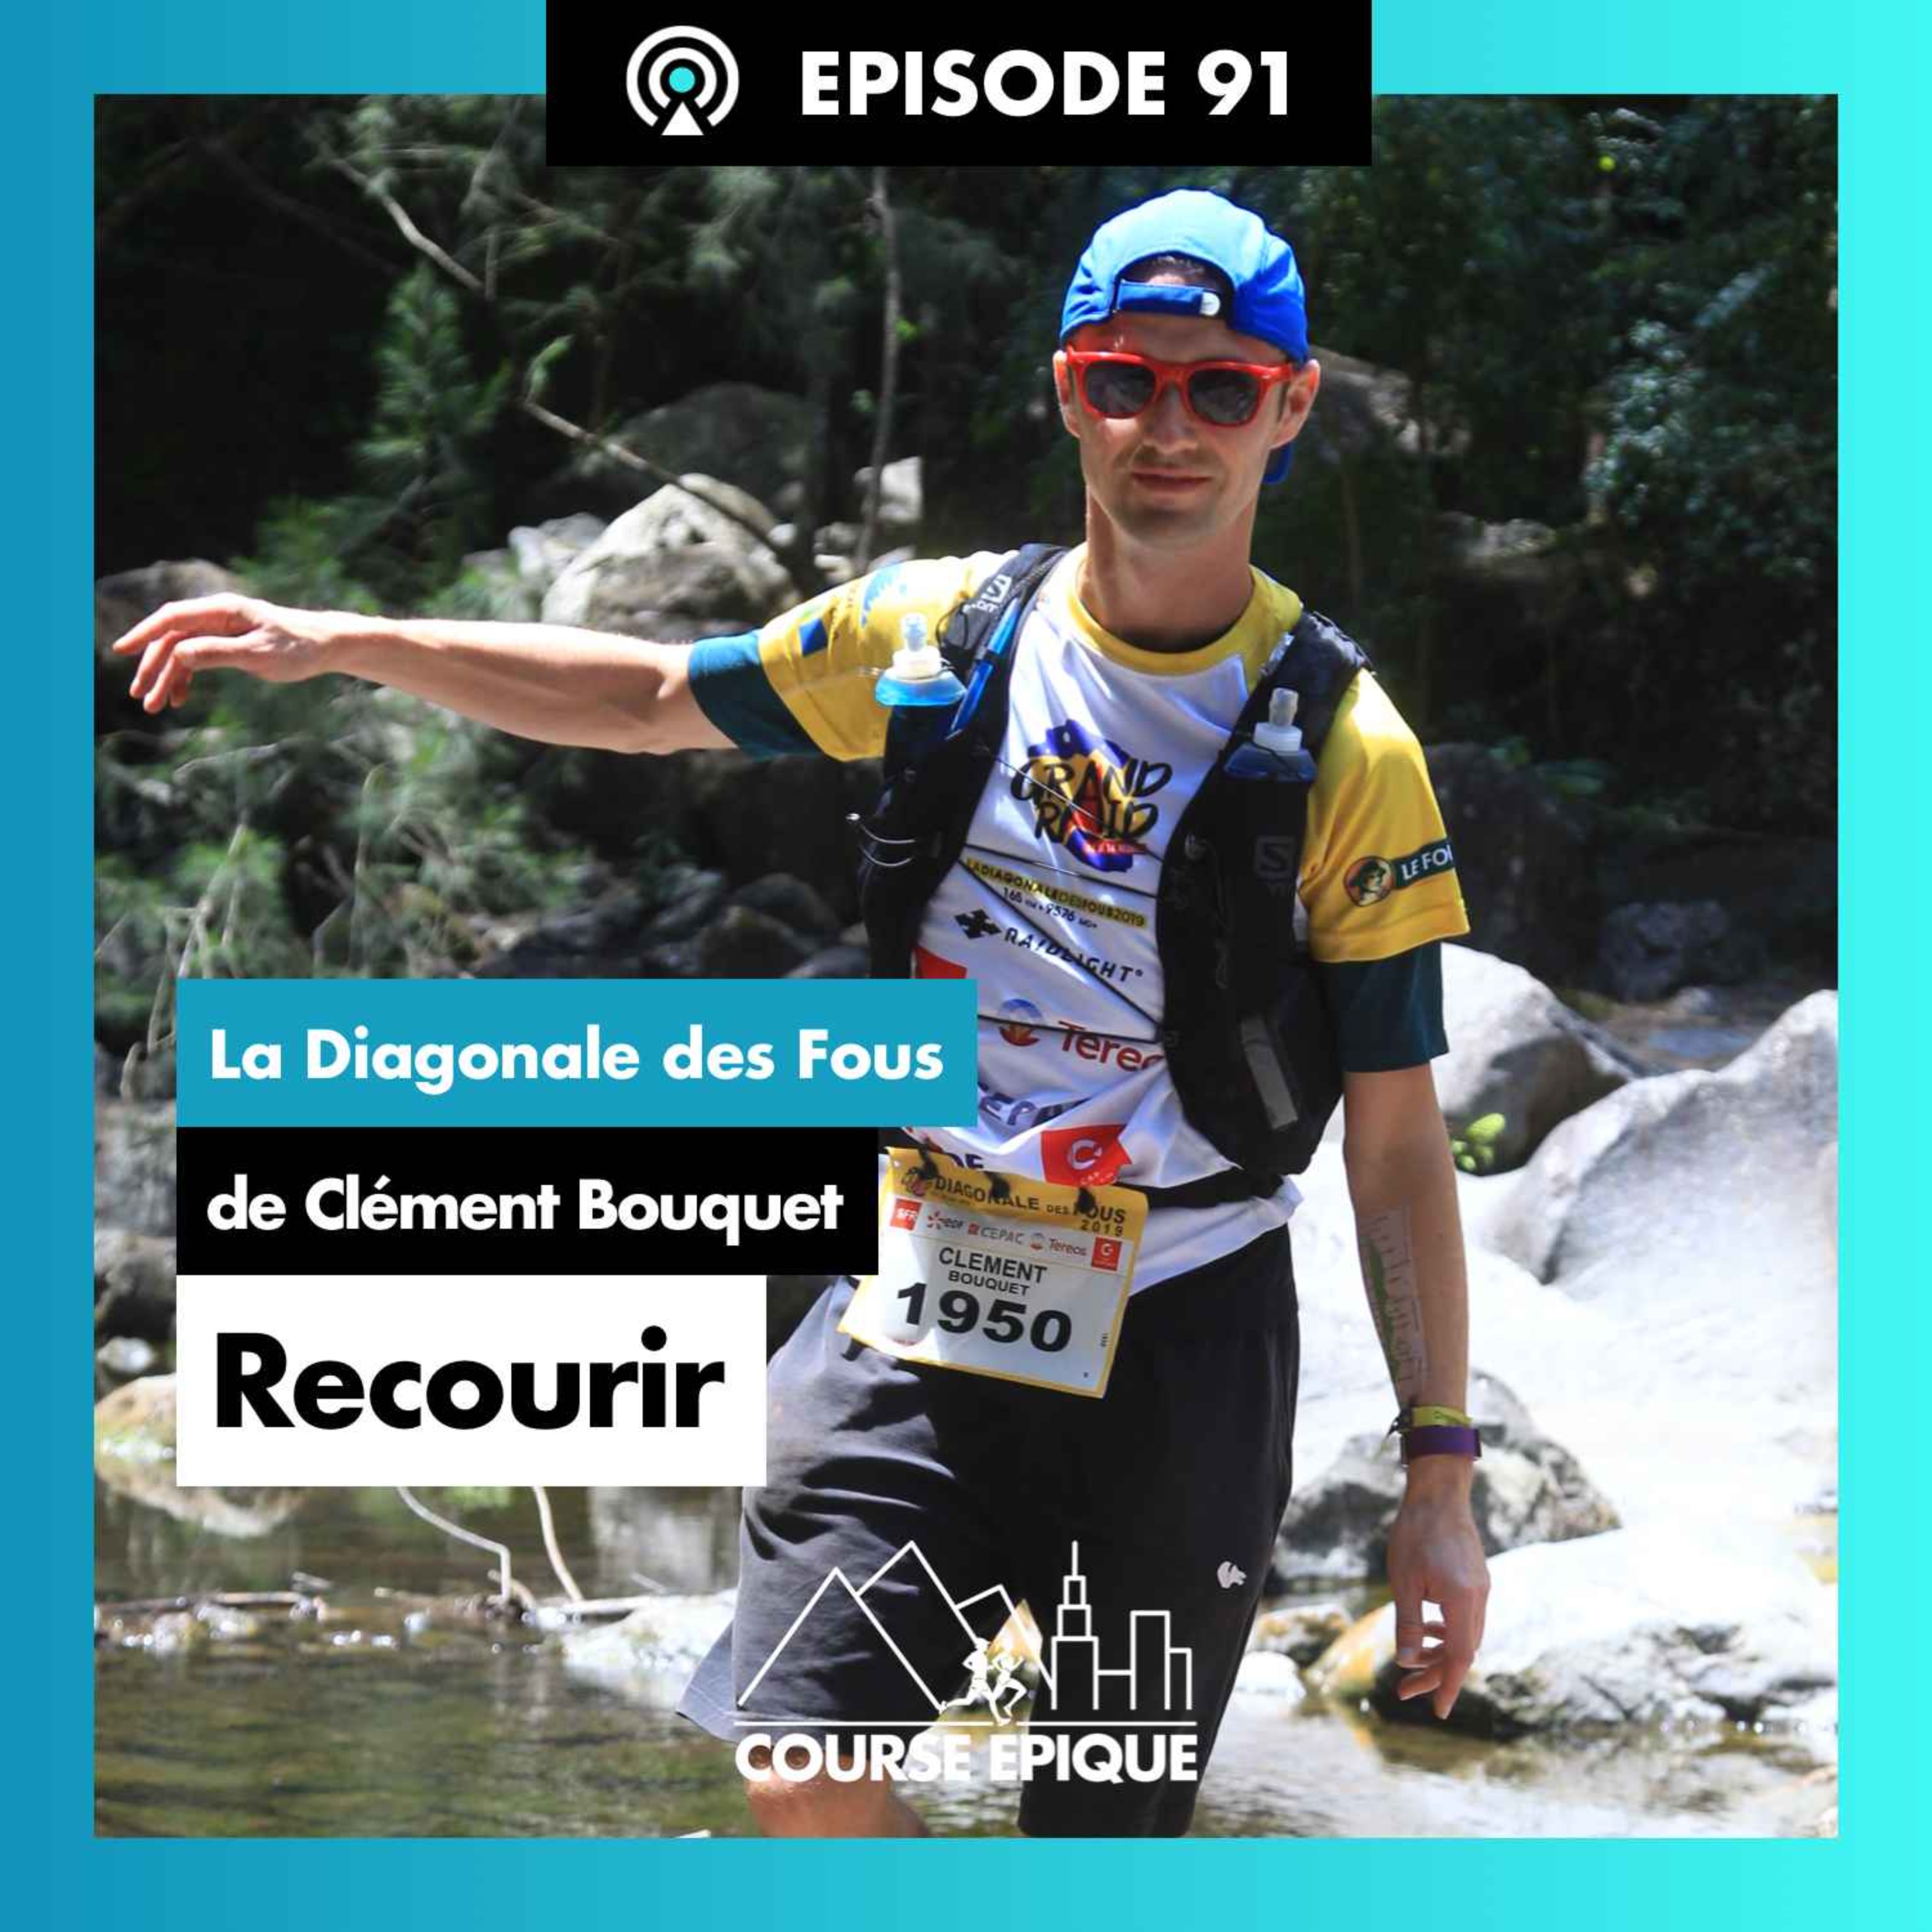 #91 "Recourir", la Diagonale des Fous de Clément Bouquet